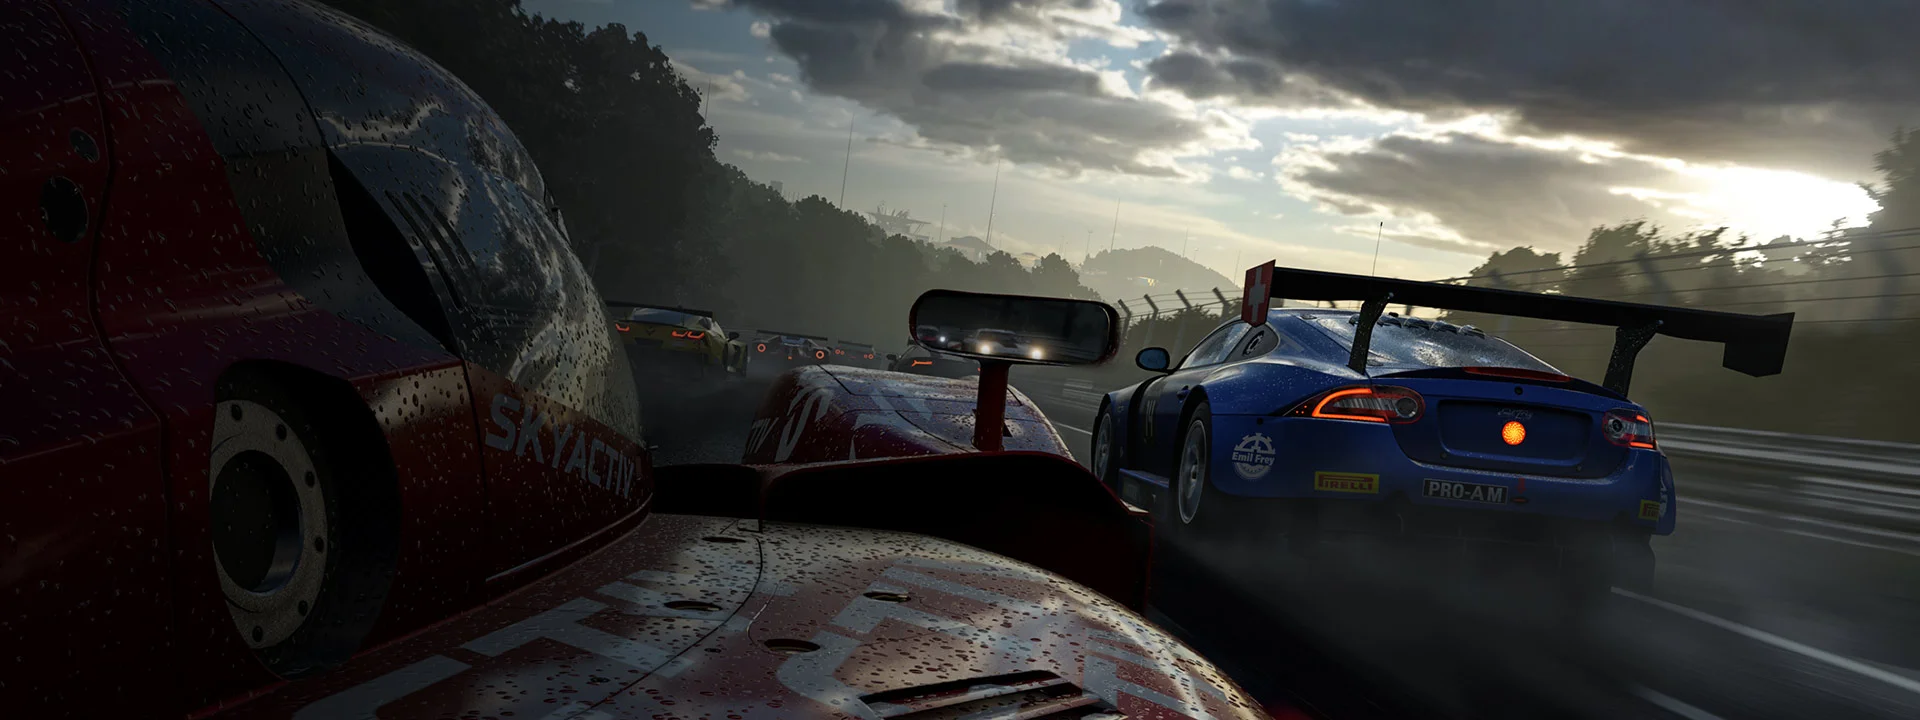 Гифка дня: Microsoft все испортила в Forza Motorsport 7 - фото 1